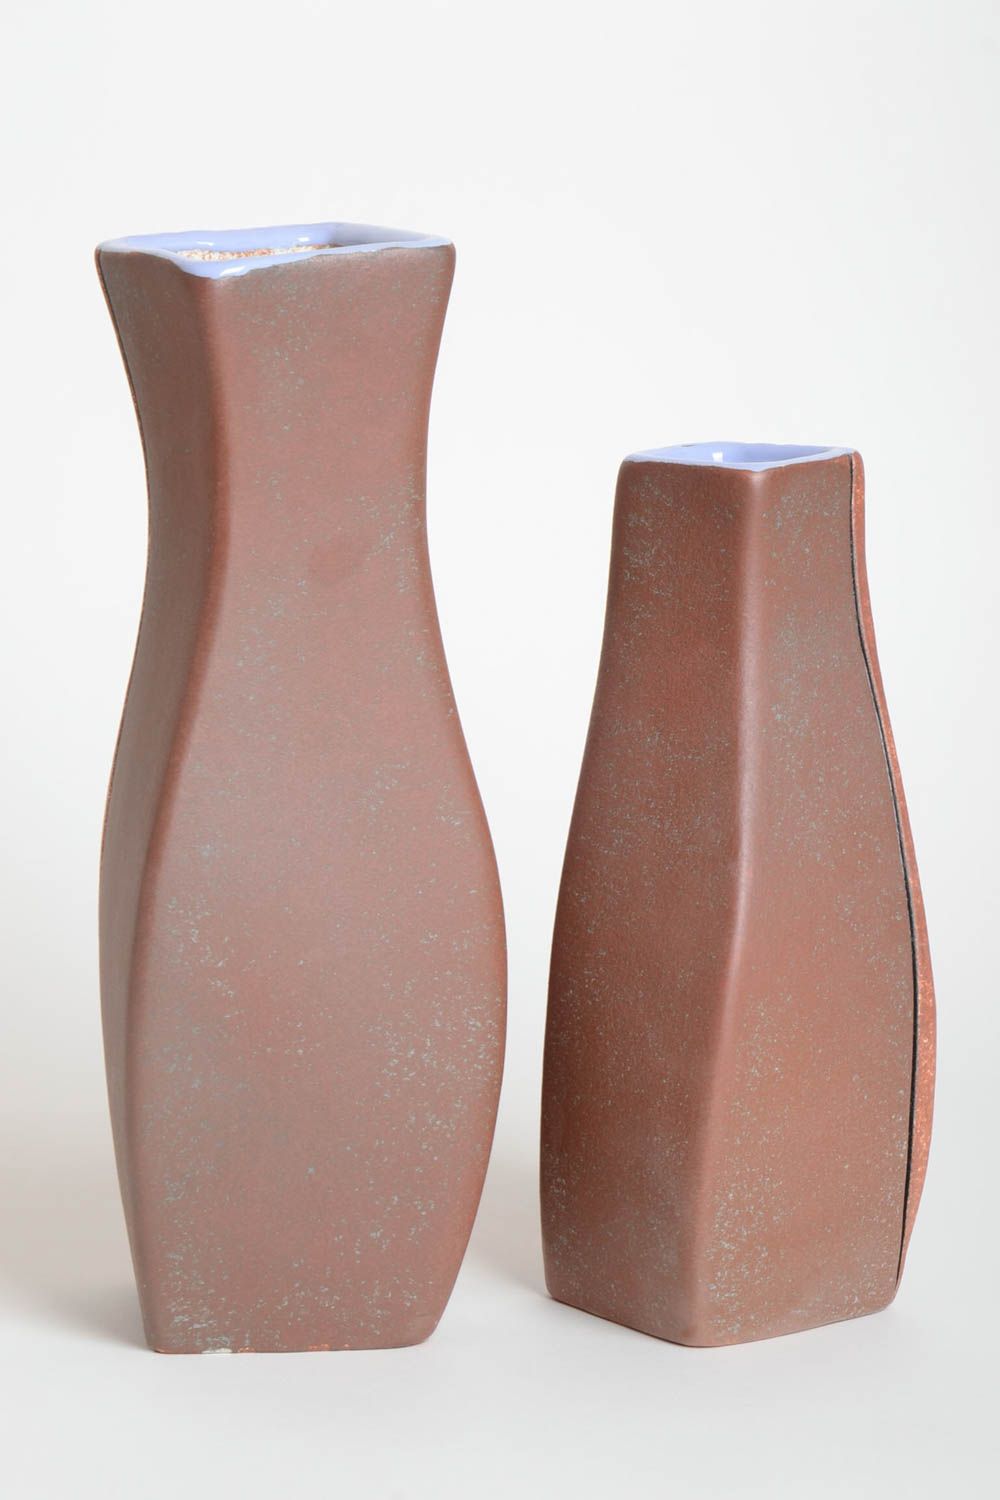 Handmade Keramik Vasen Deko Wohnzimmer Vasen aus Ton exklusiv bemalt 2 Stück foto 4